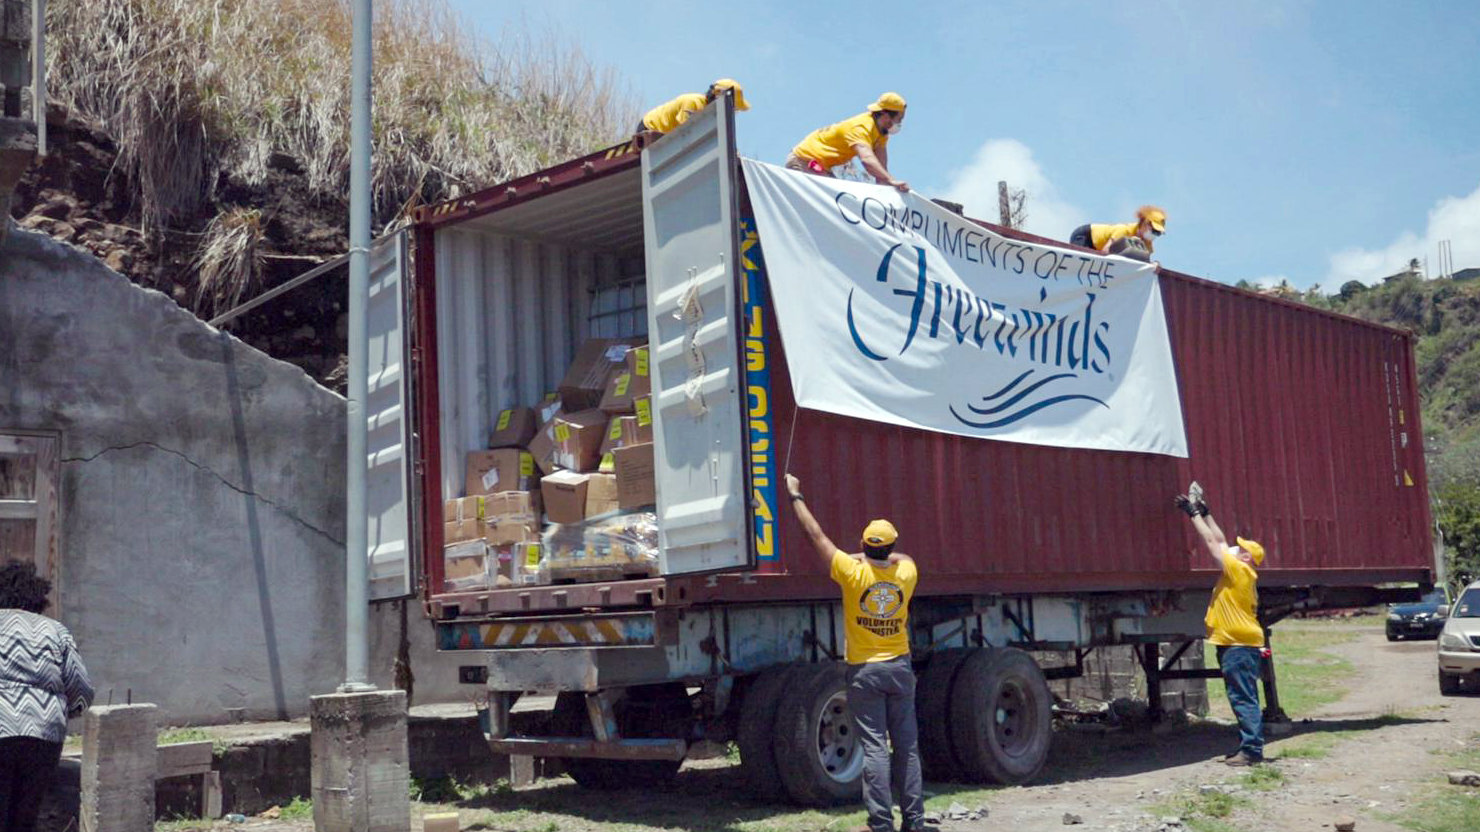 Команда саентологических волонтёров разгружает контейнер с предметами первой необходимости, которые отправил на остров корабль «Фривиндз» при поддержке МАС.